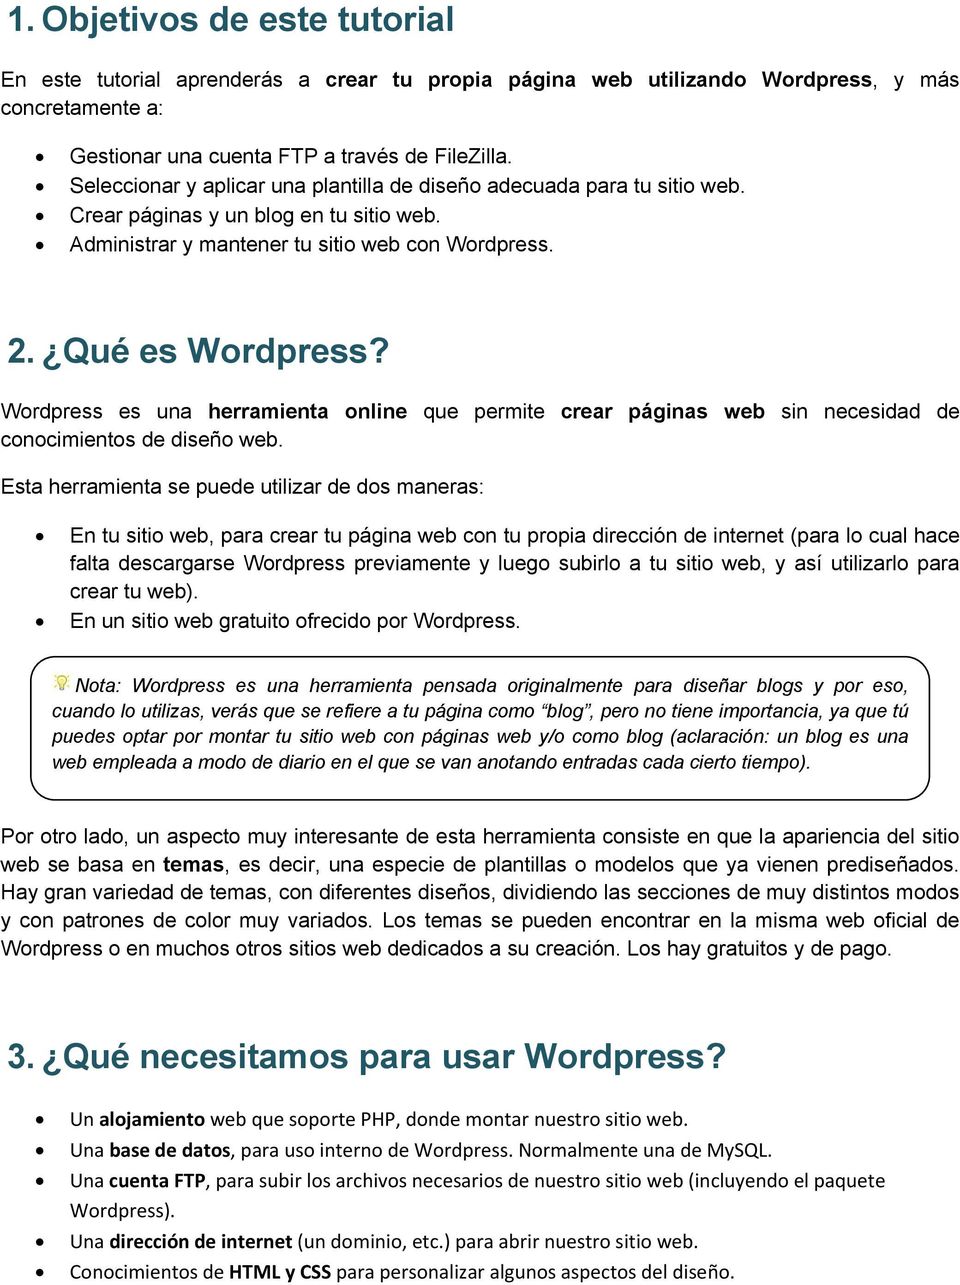 Wordpress es una herramienta online que permite crear páginas web sin necesidad de conocimientos de diseño web.